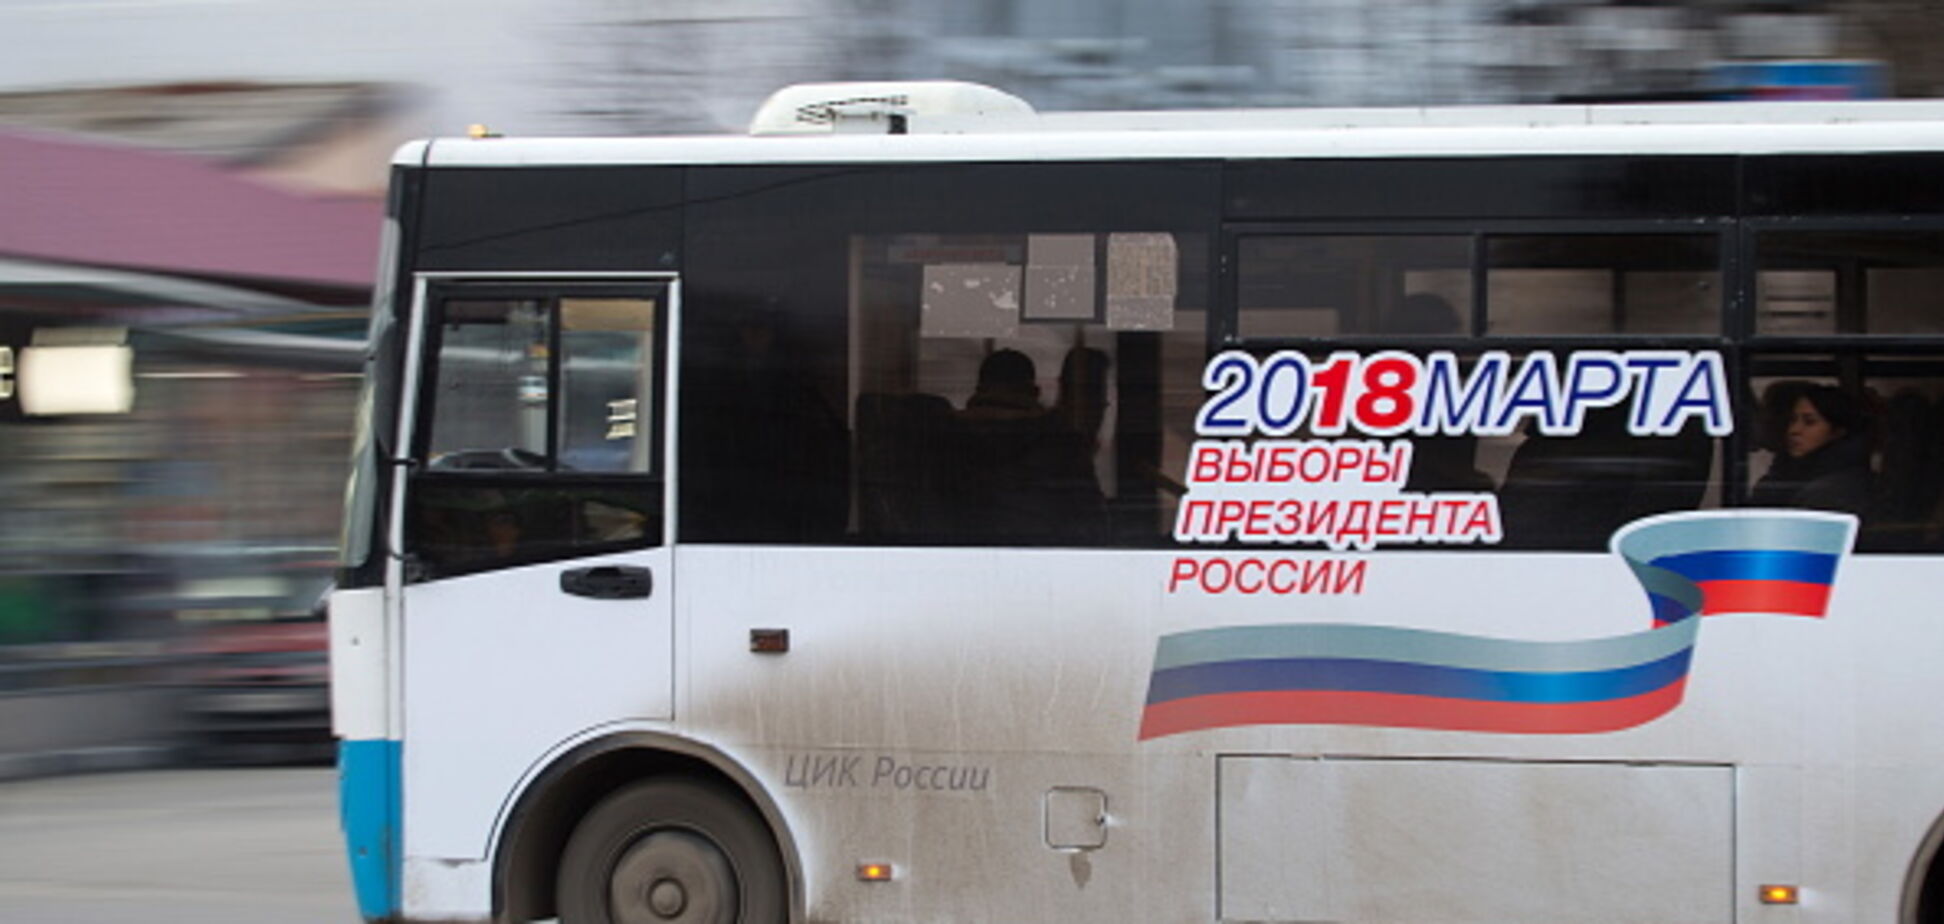 Как на 'референдуме': оккупанты выдвинули требование по 'выборам Путина' в Крыму